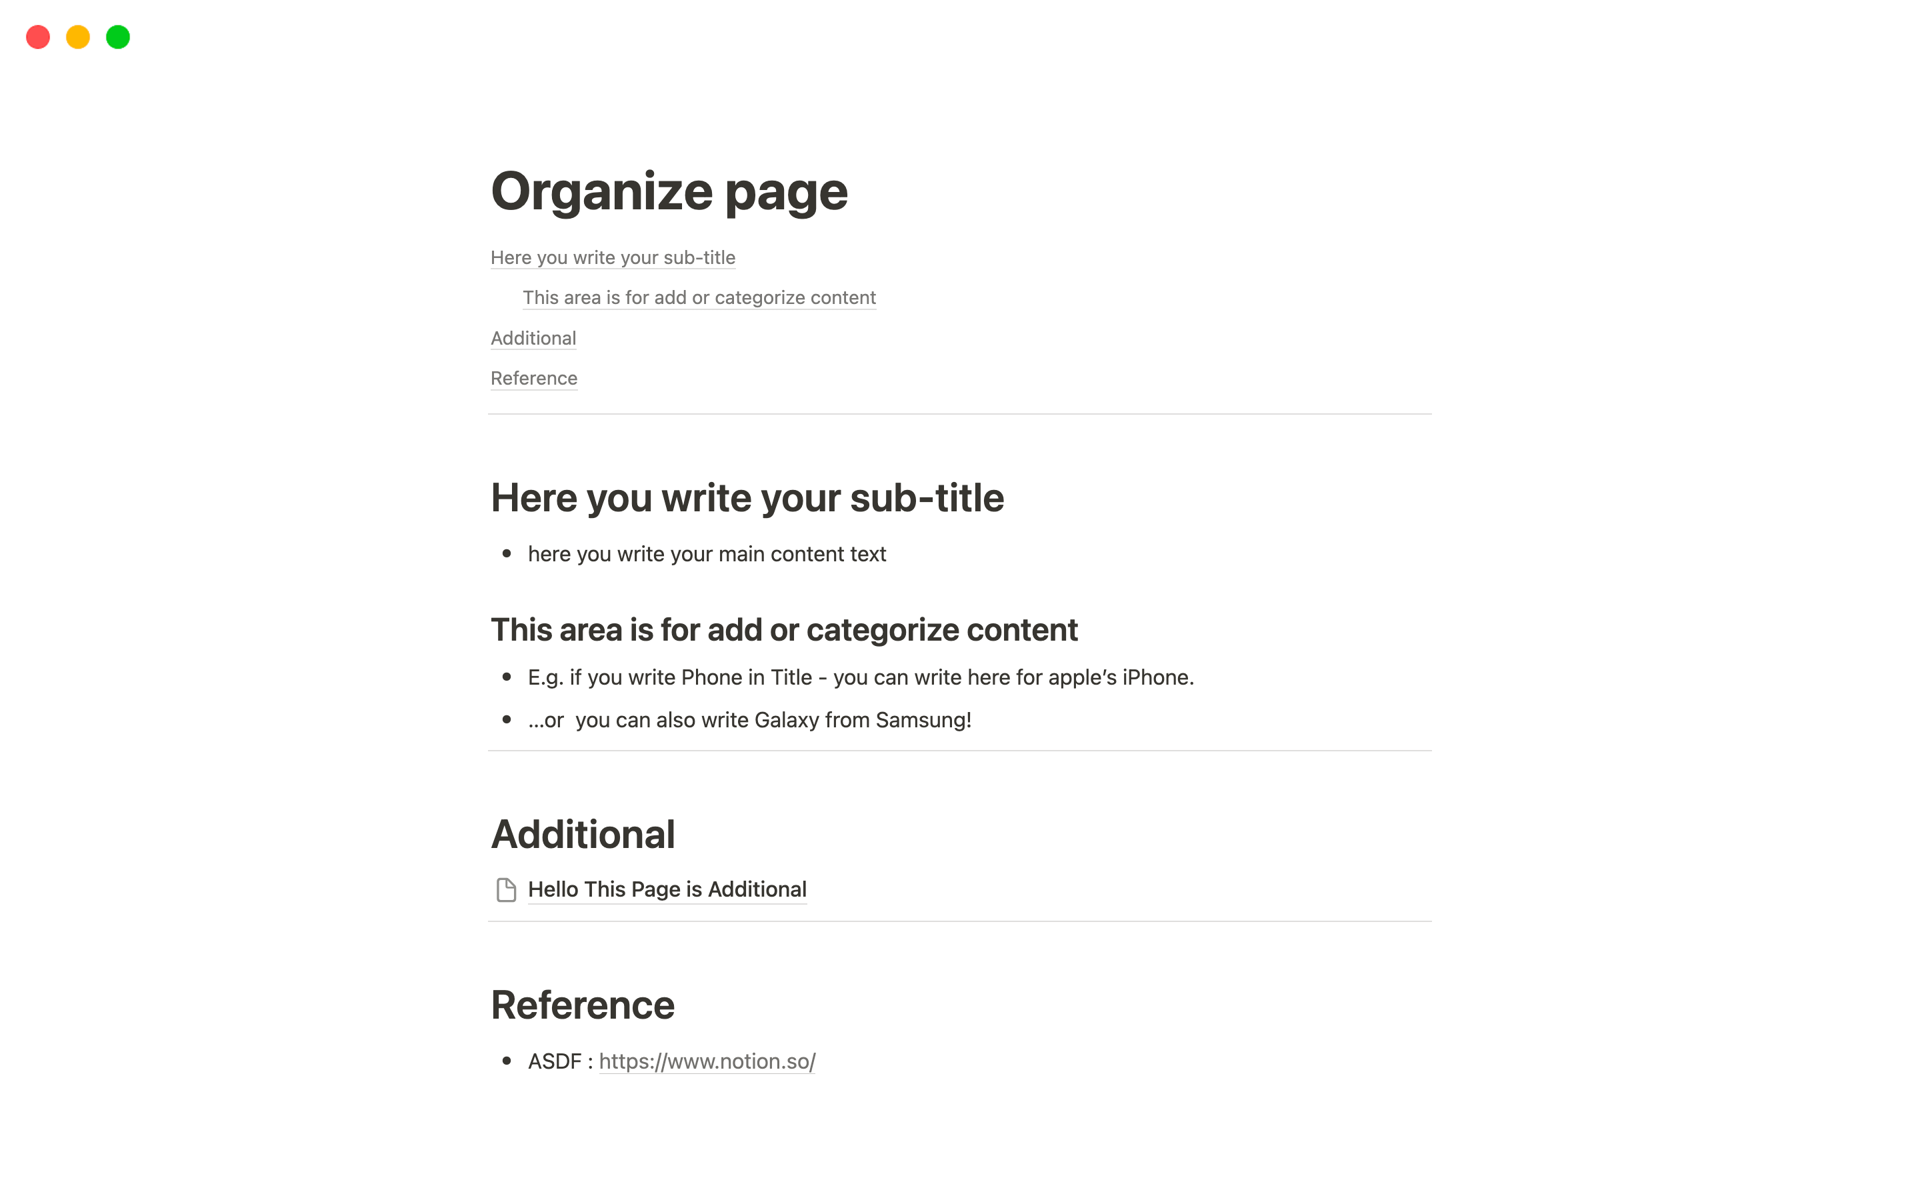 En förhandsgranskning av mallen för Organize page